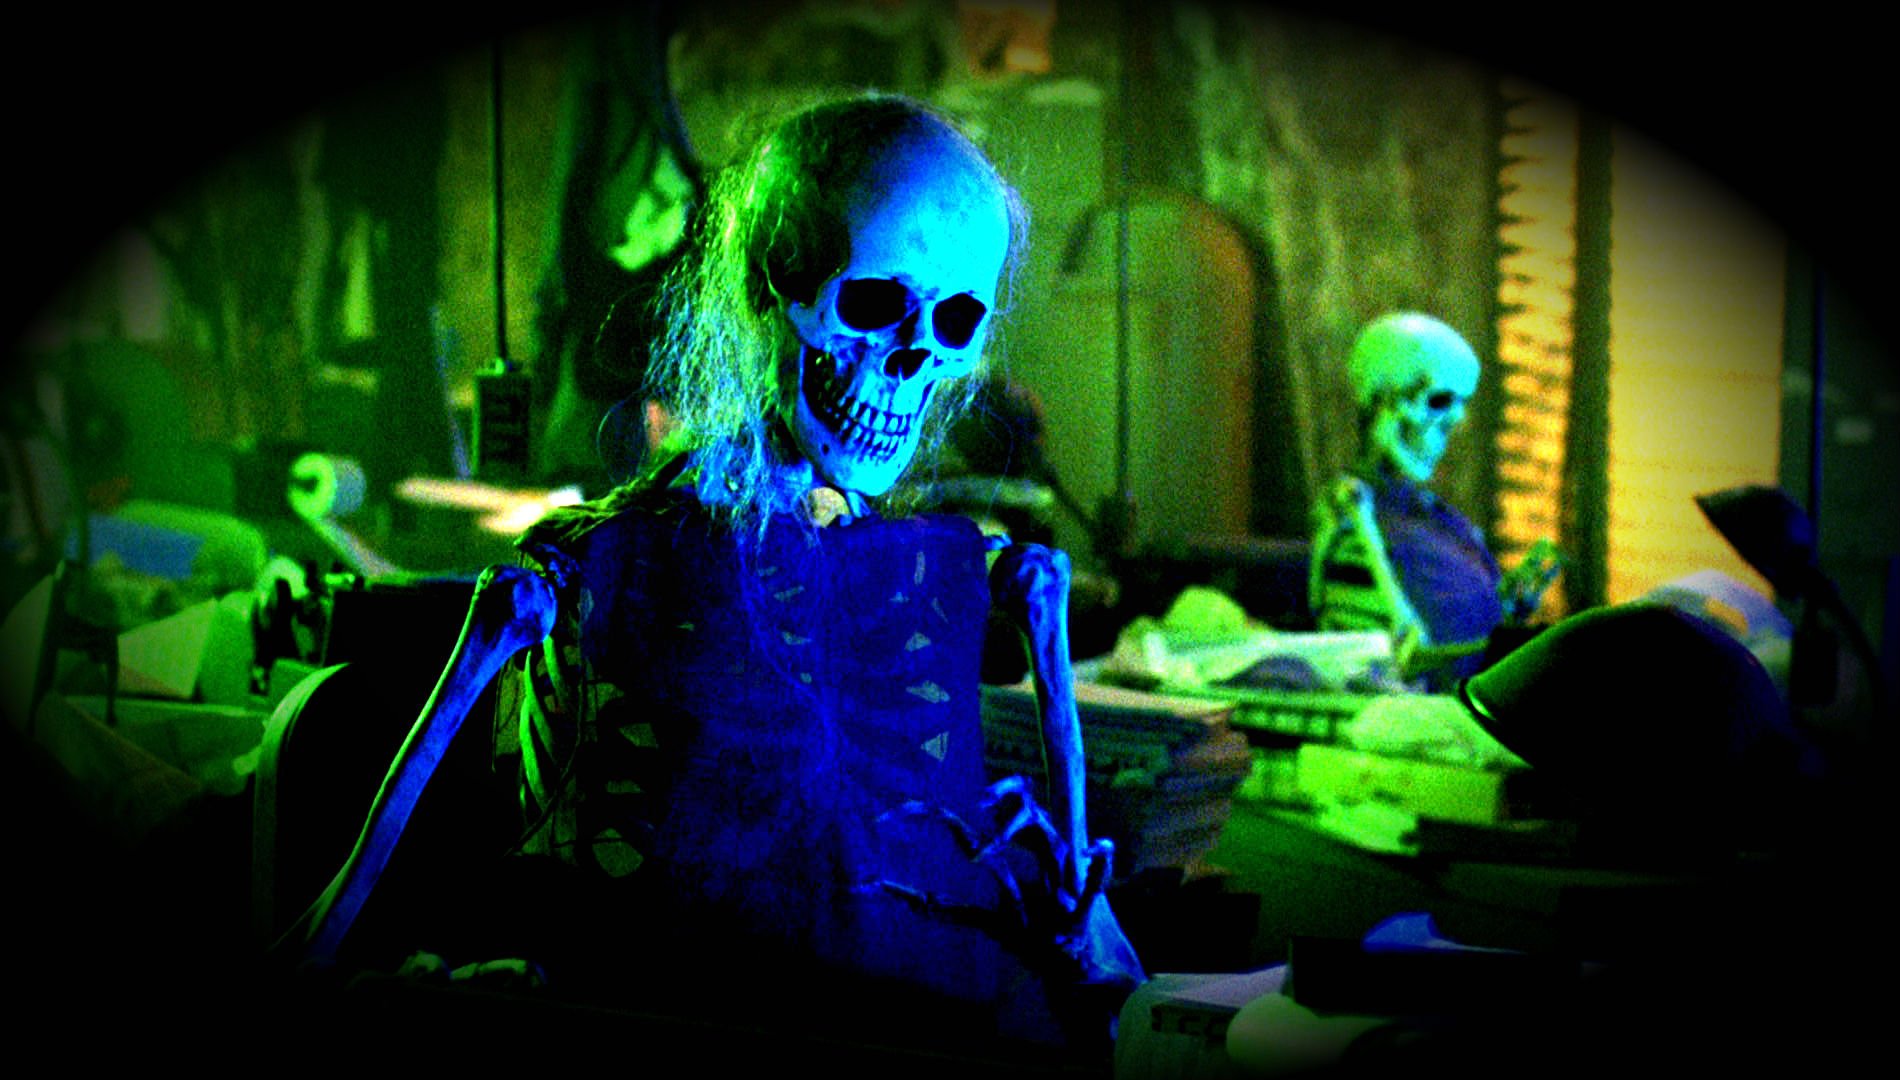 Dark Movie Film Horror Skull Skeleton Halloween Wallpaper Background